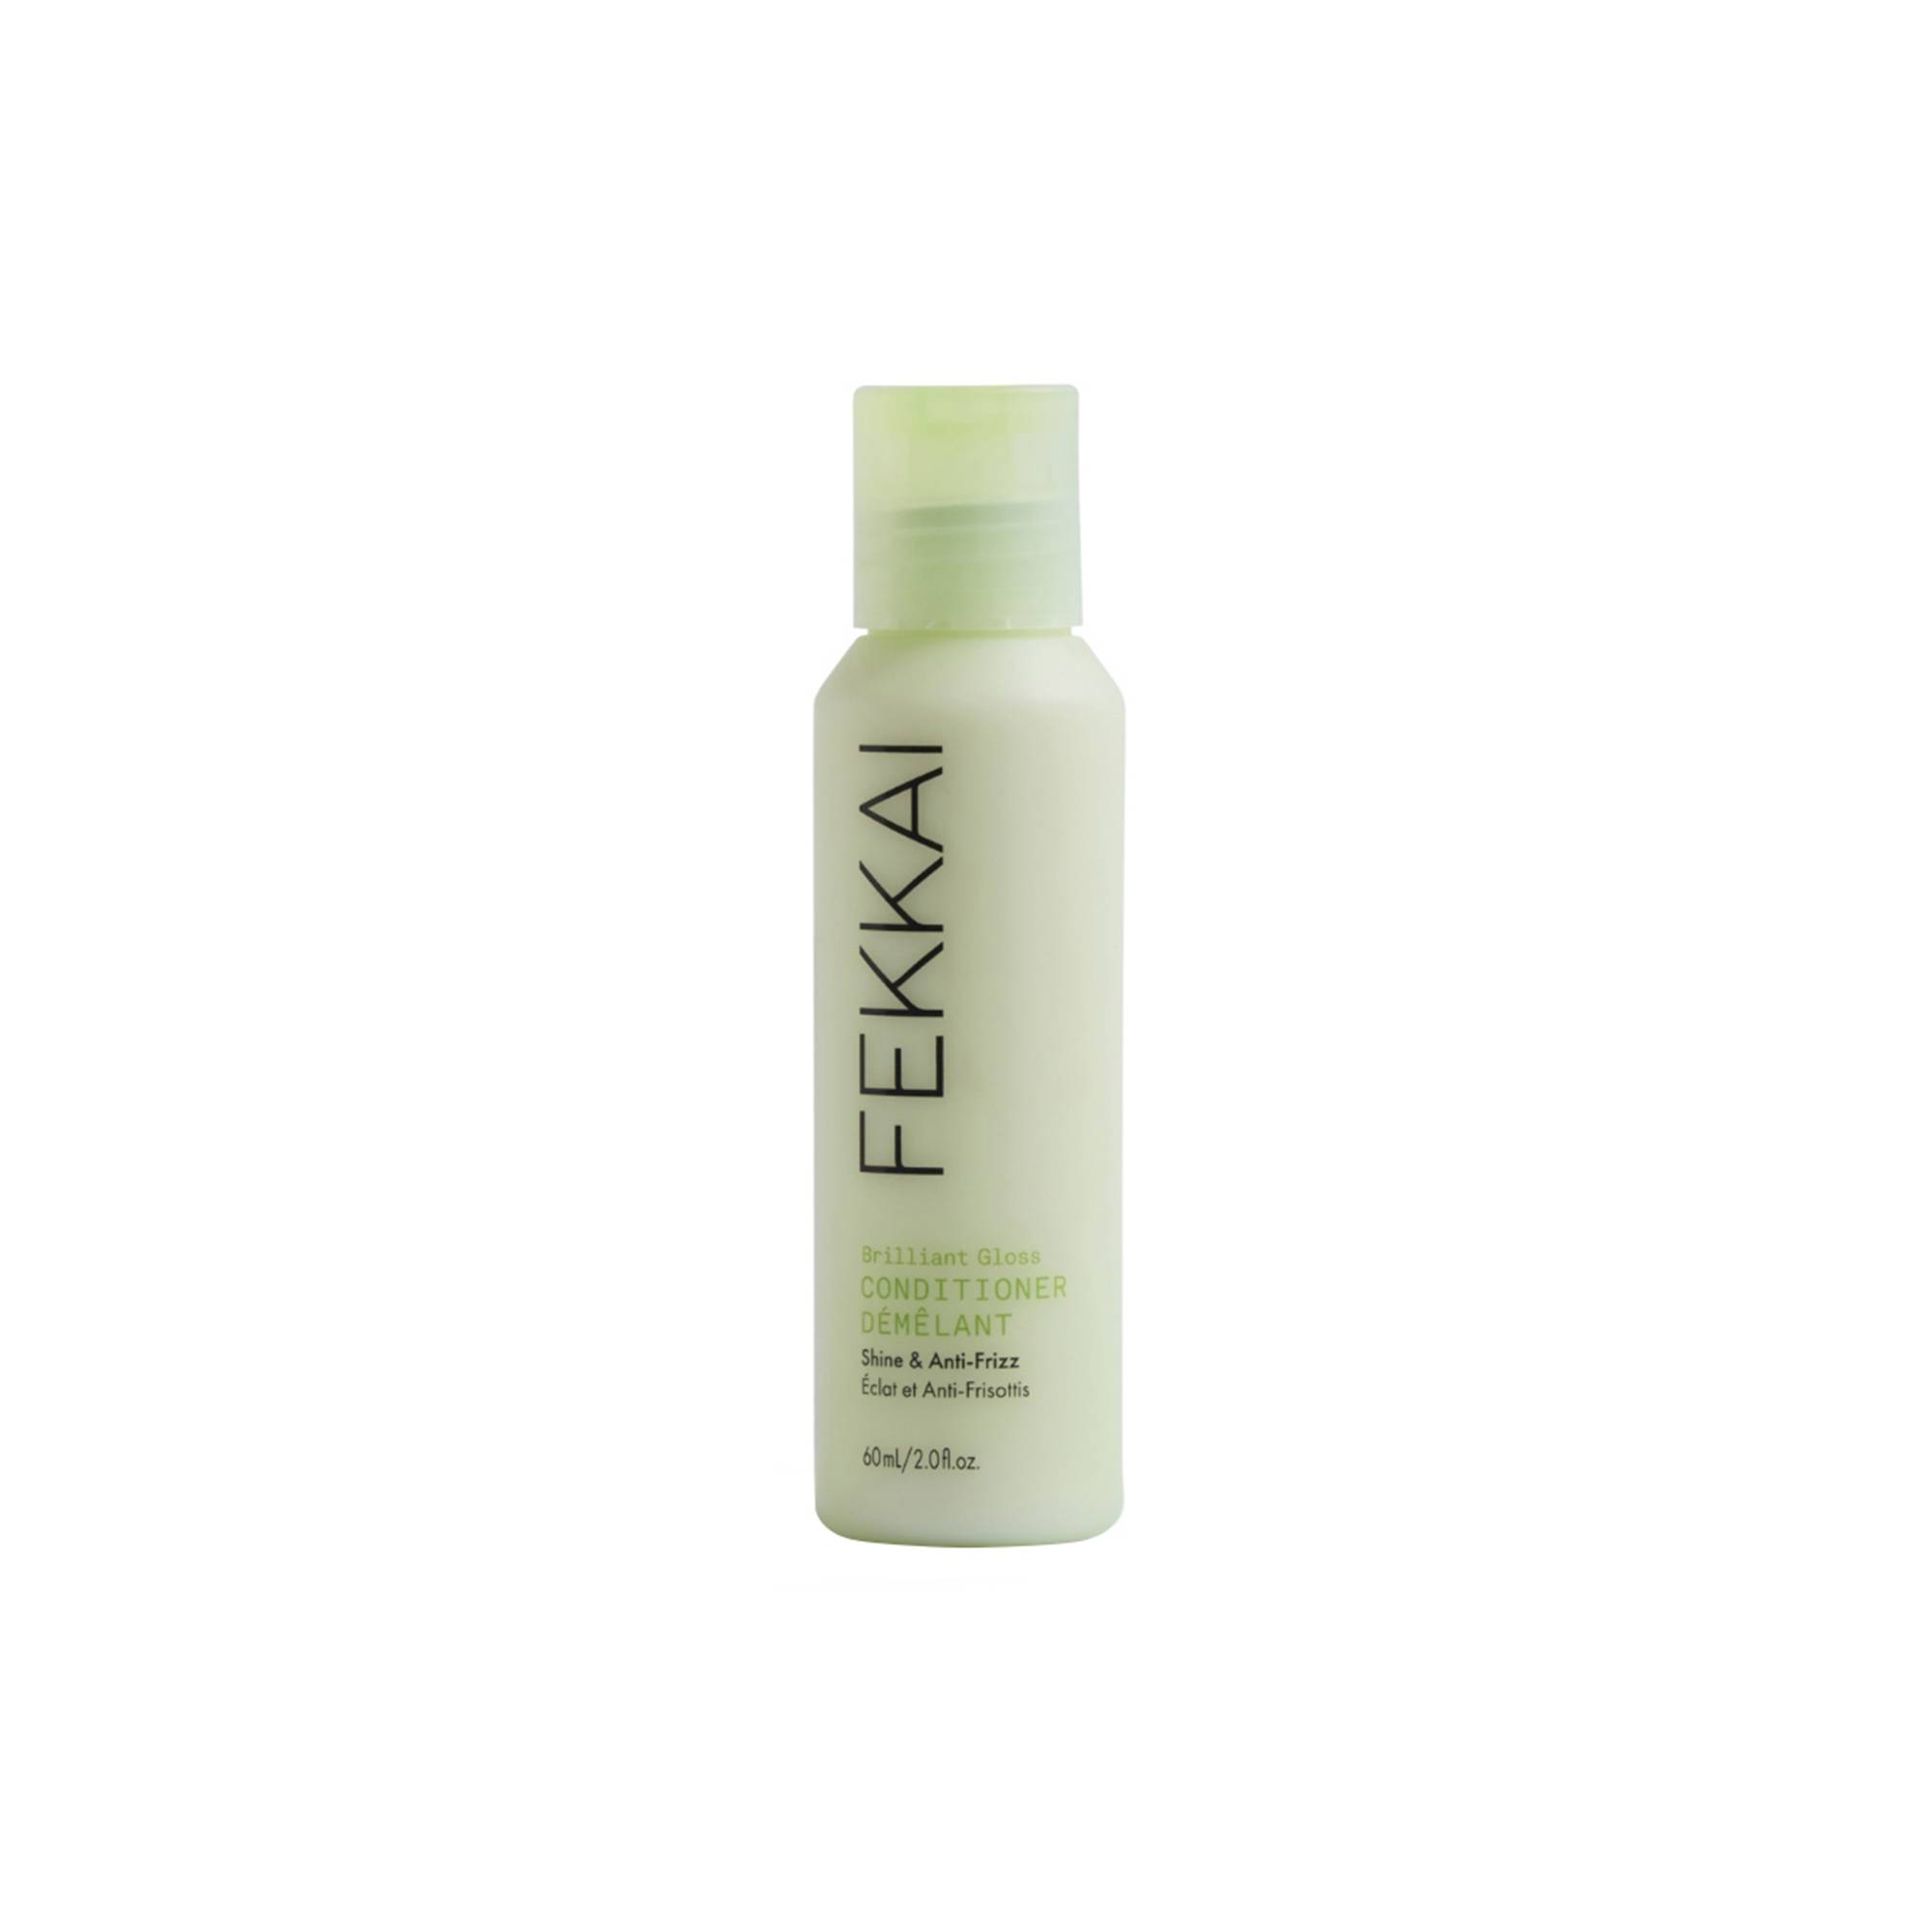 Après-shampoing brillance et anti-frisottis Brilliant Gloss de la marque Fekkai Contenance 60ml - 1